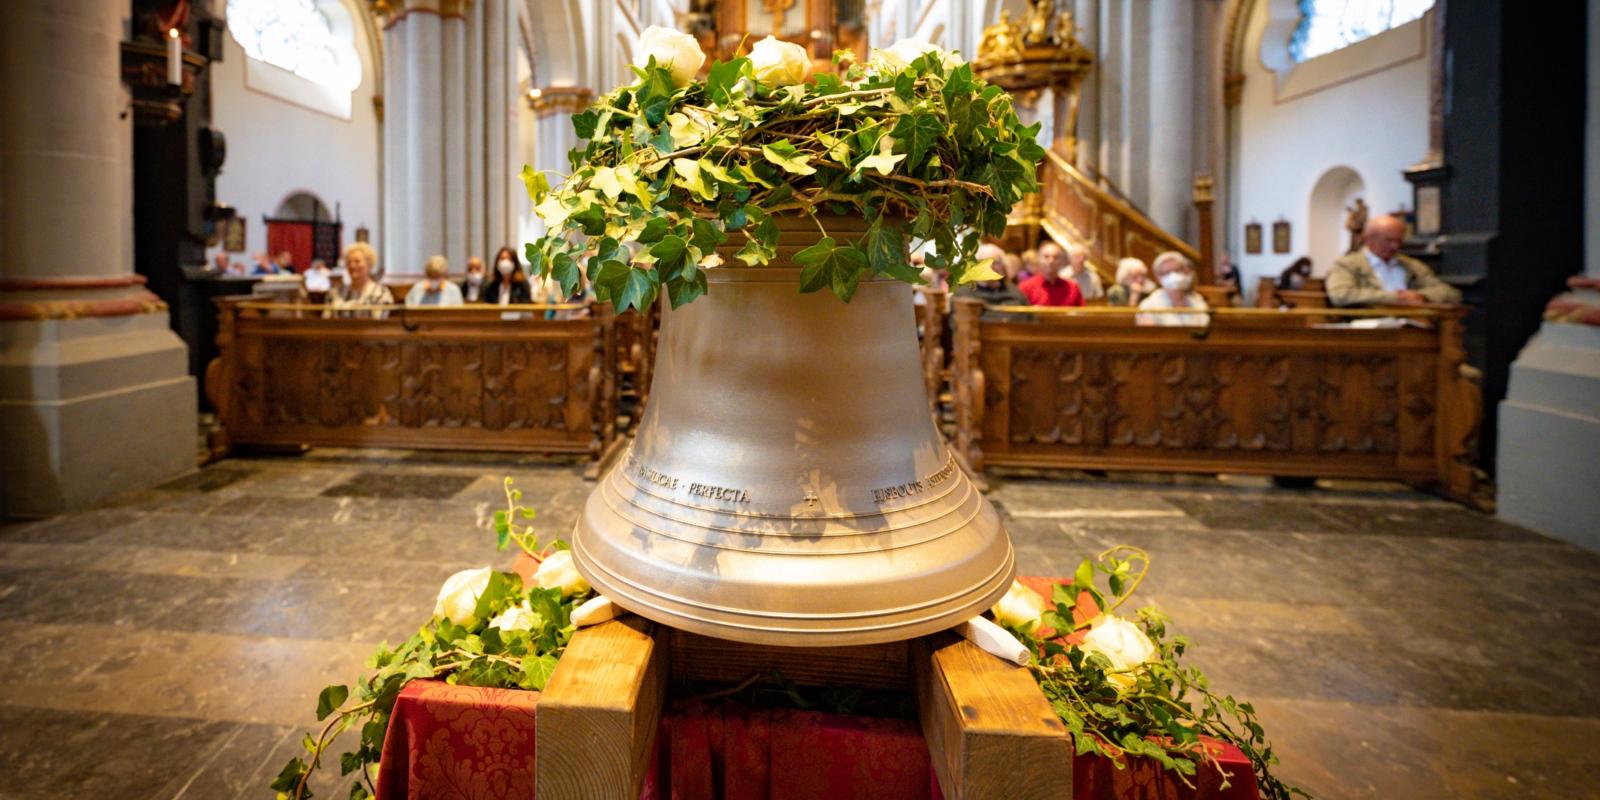 Am Sonntag, 28. August 2022 hat der Bonner Stadtdechant Dr. Wolfgang Picken die neue Glocke 'St. Adelheid' geweiht.